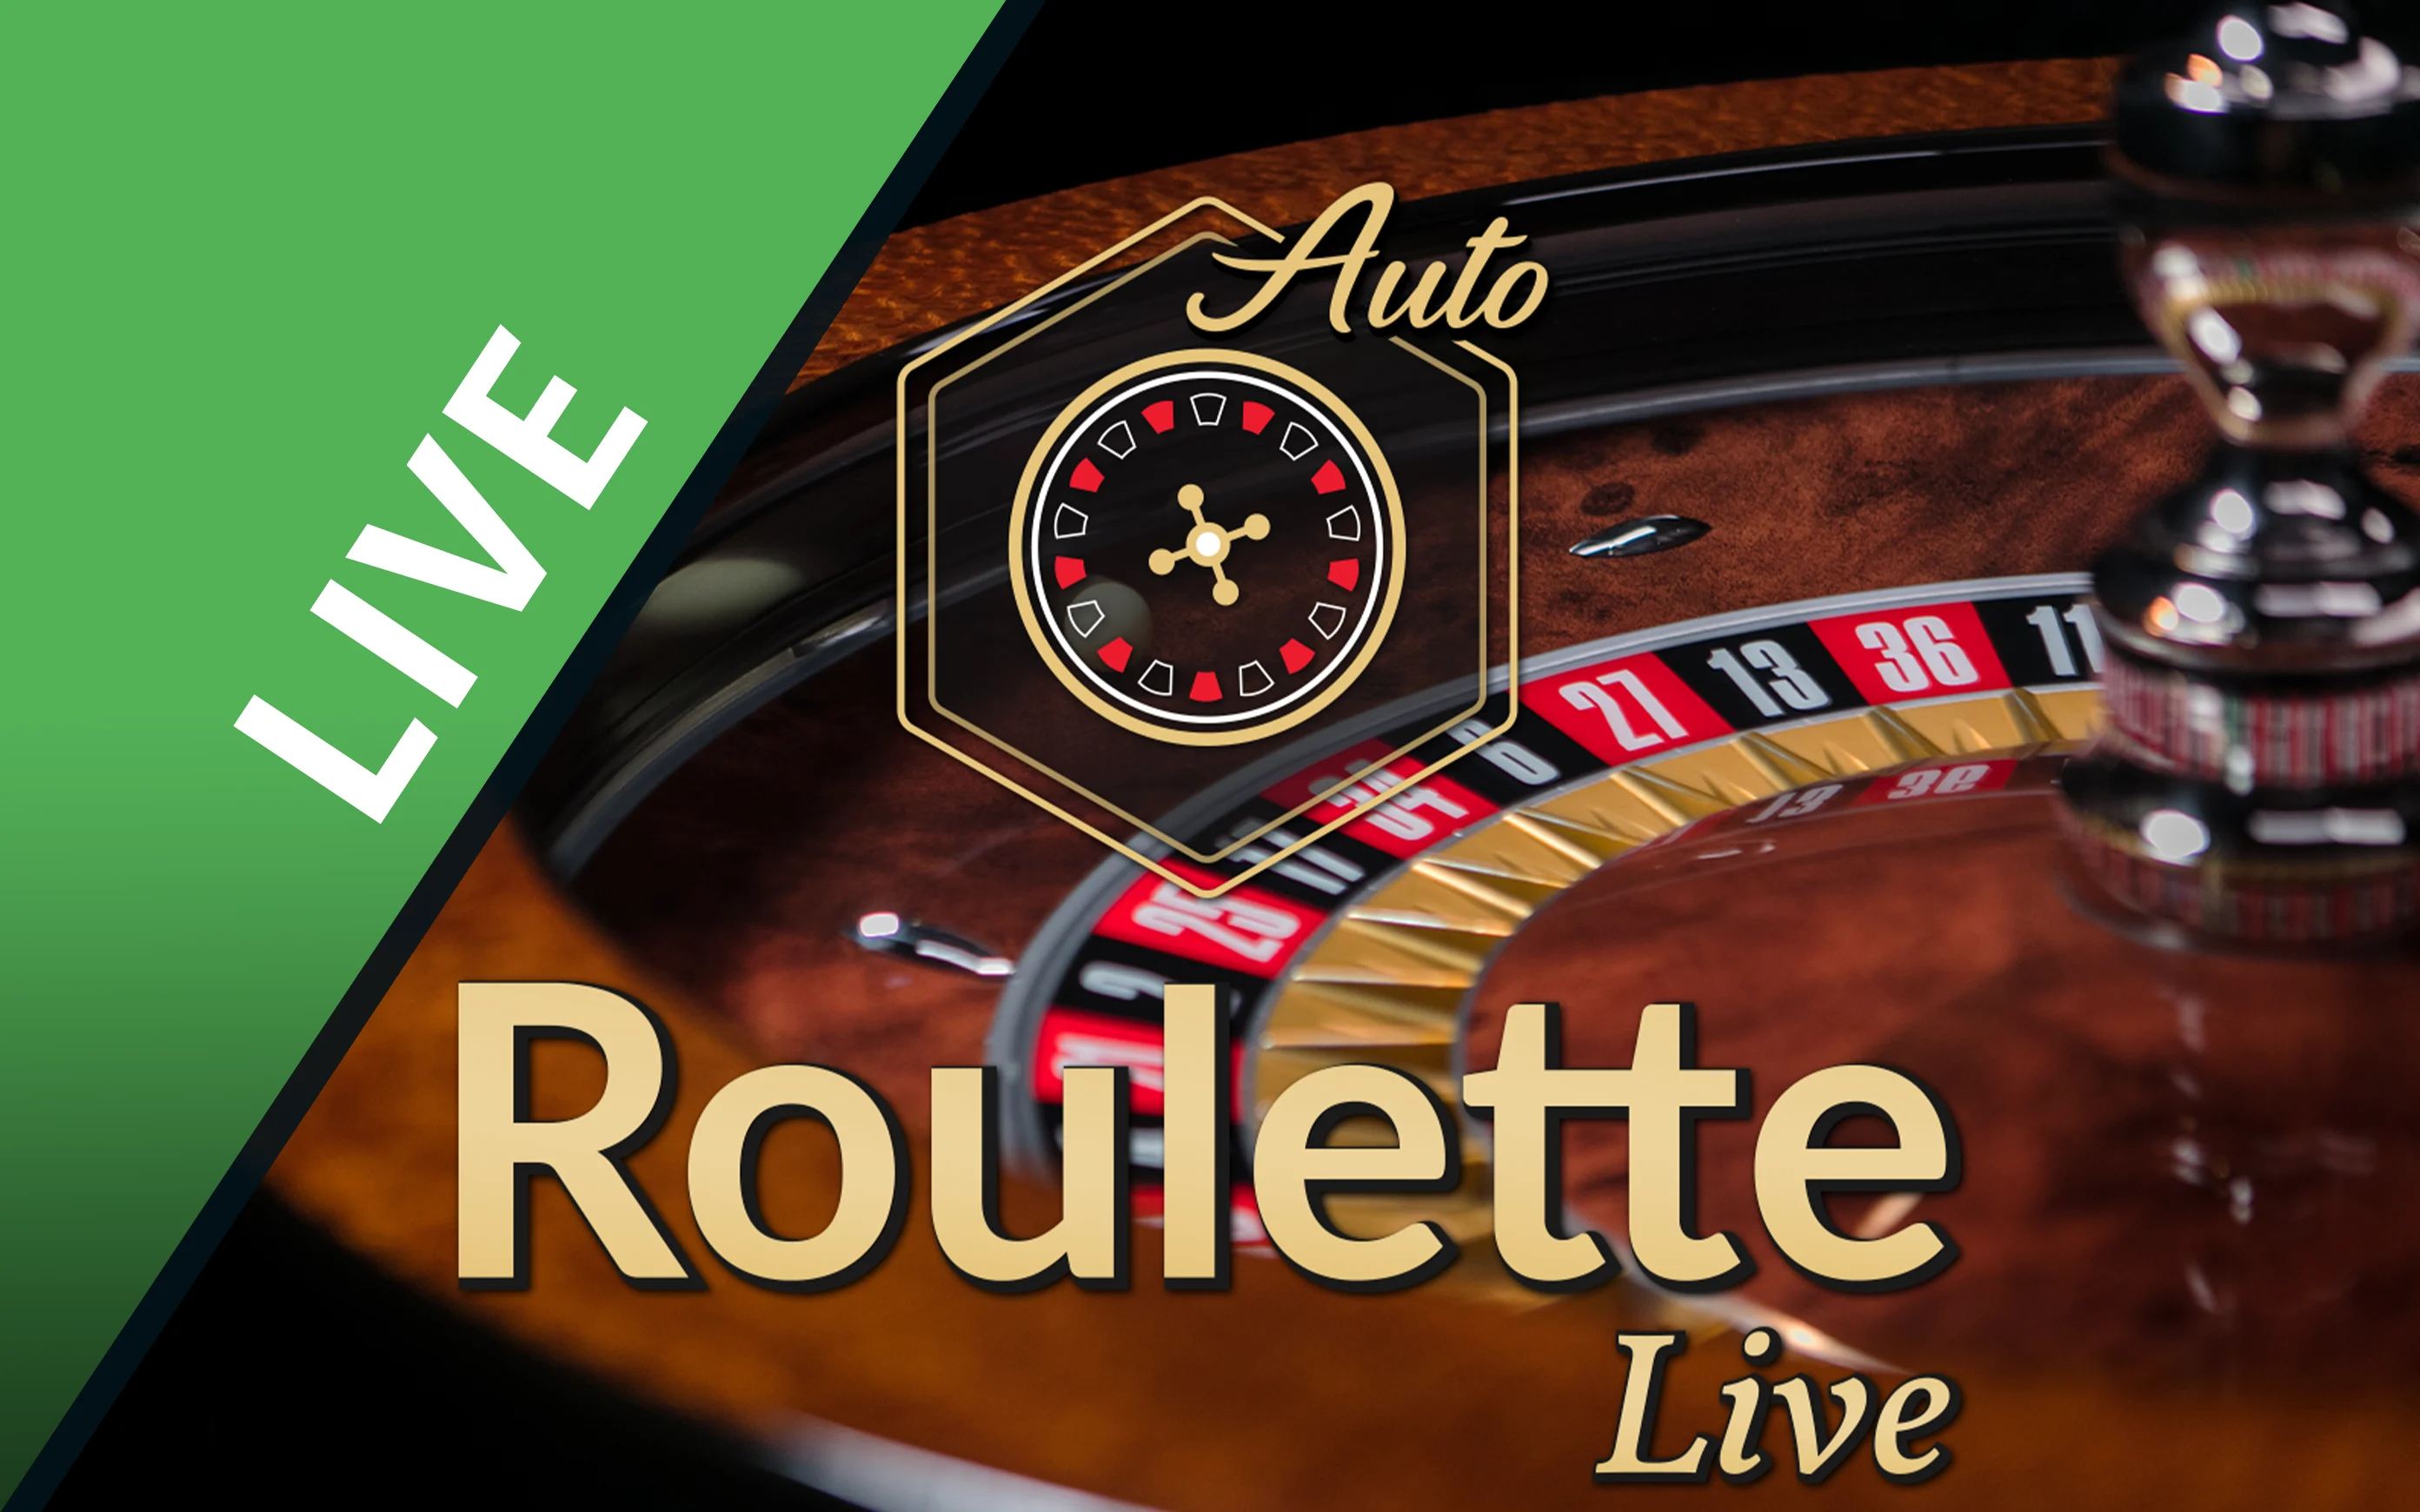 Chơi Auto Roulette trên sòng bạc trực tuyến Starcasino.be